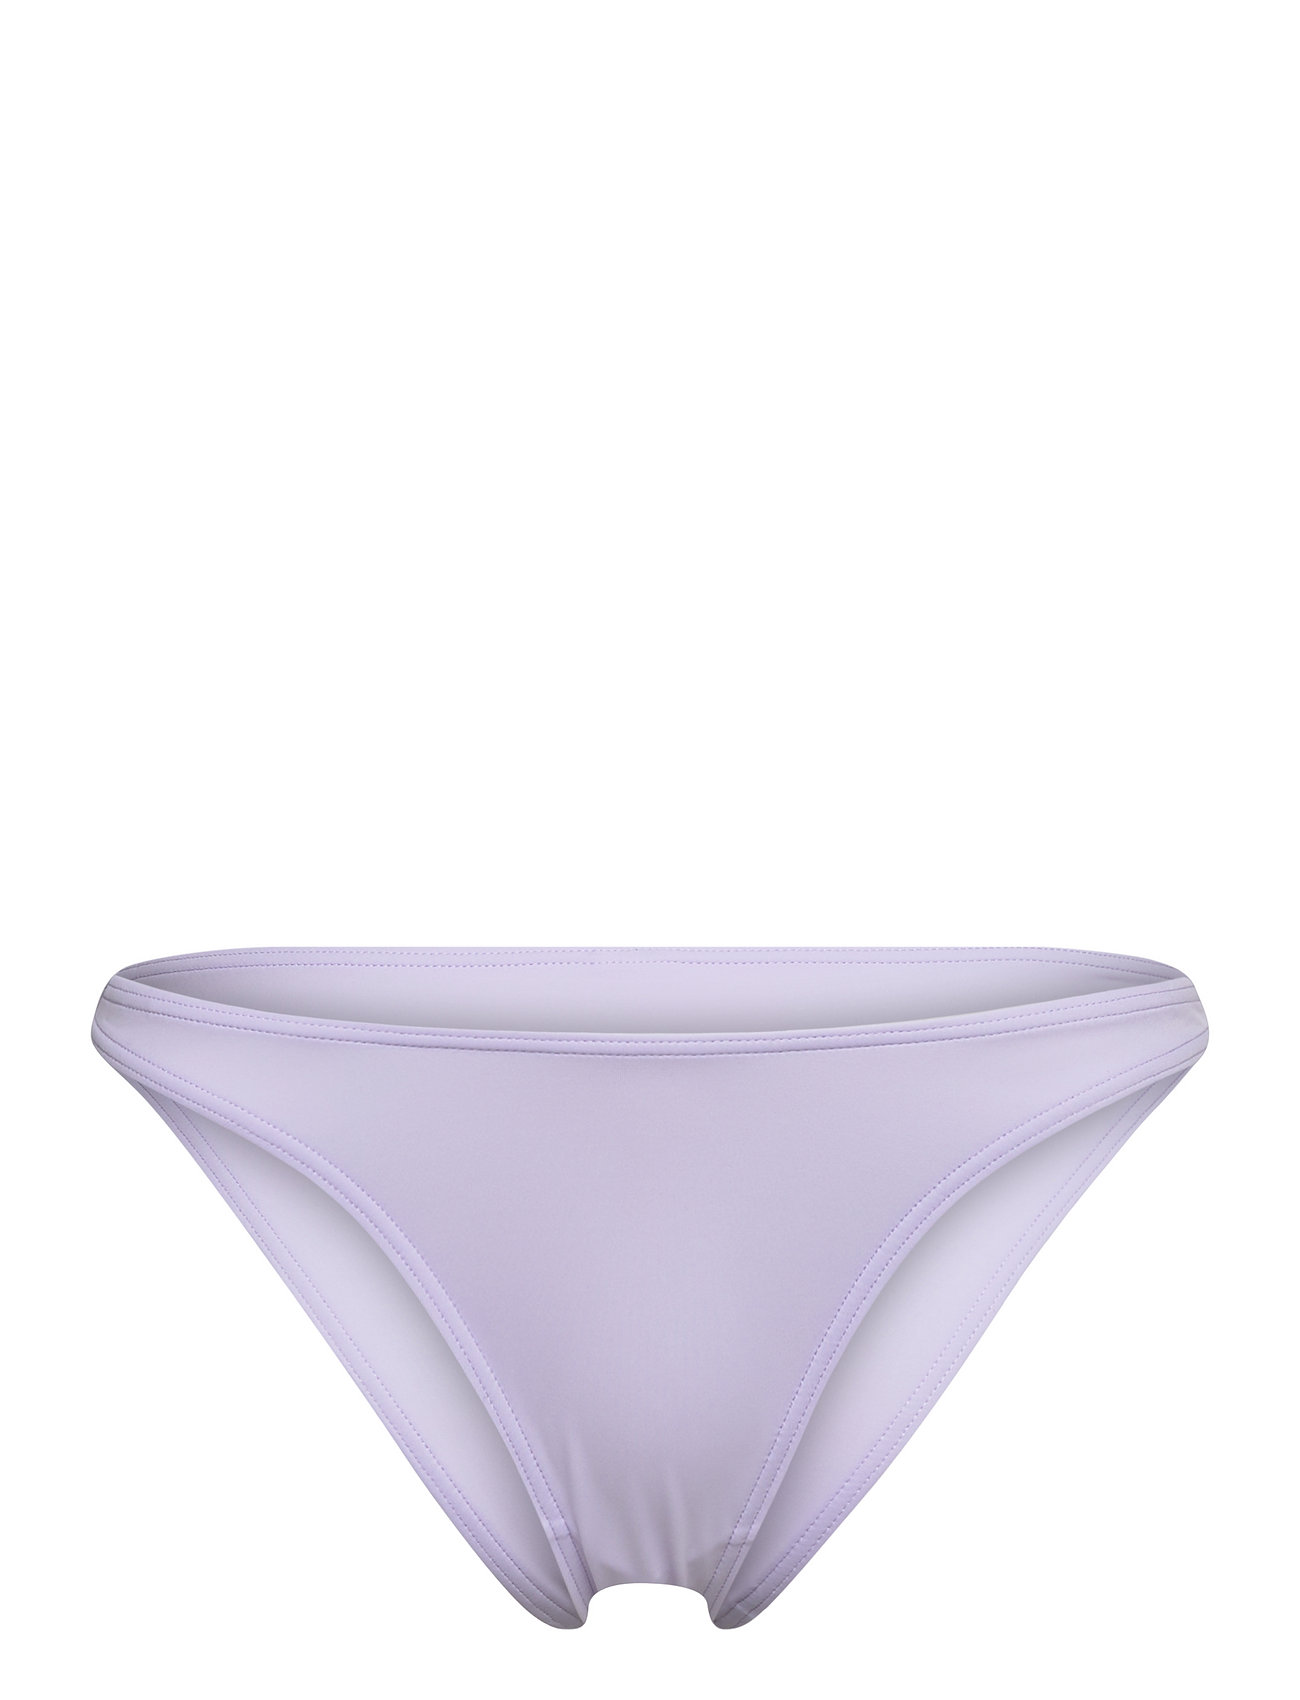 "OW Collection" "Hanna Bikini Bottom Swimwear Bikinis Bottoms Briefs Purple OW